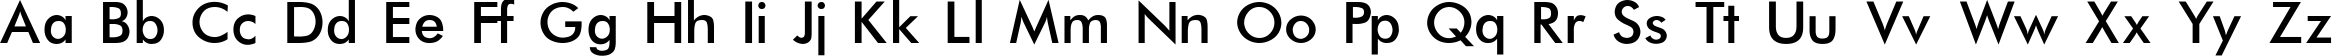 Пример написания английского алфавита шрифтом Futura-Normal